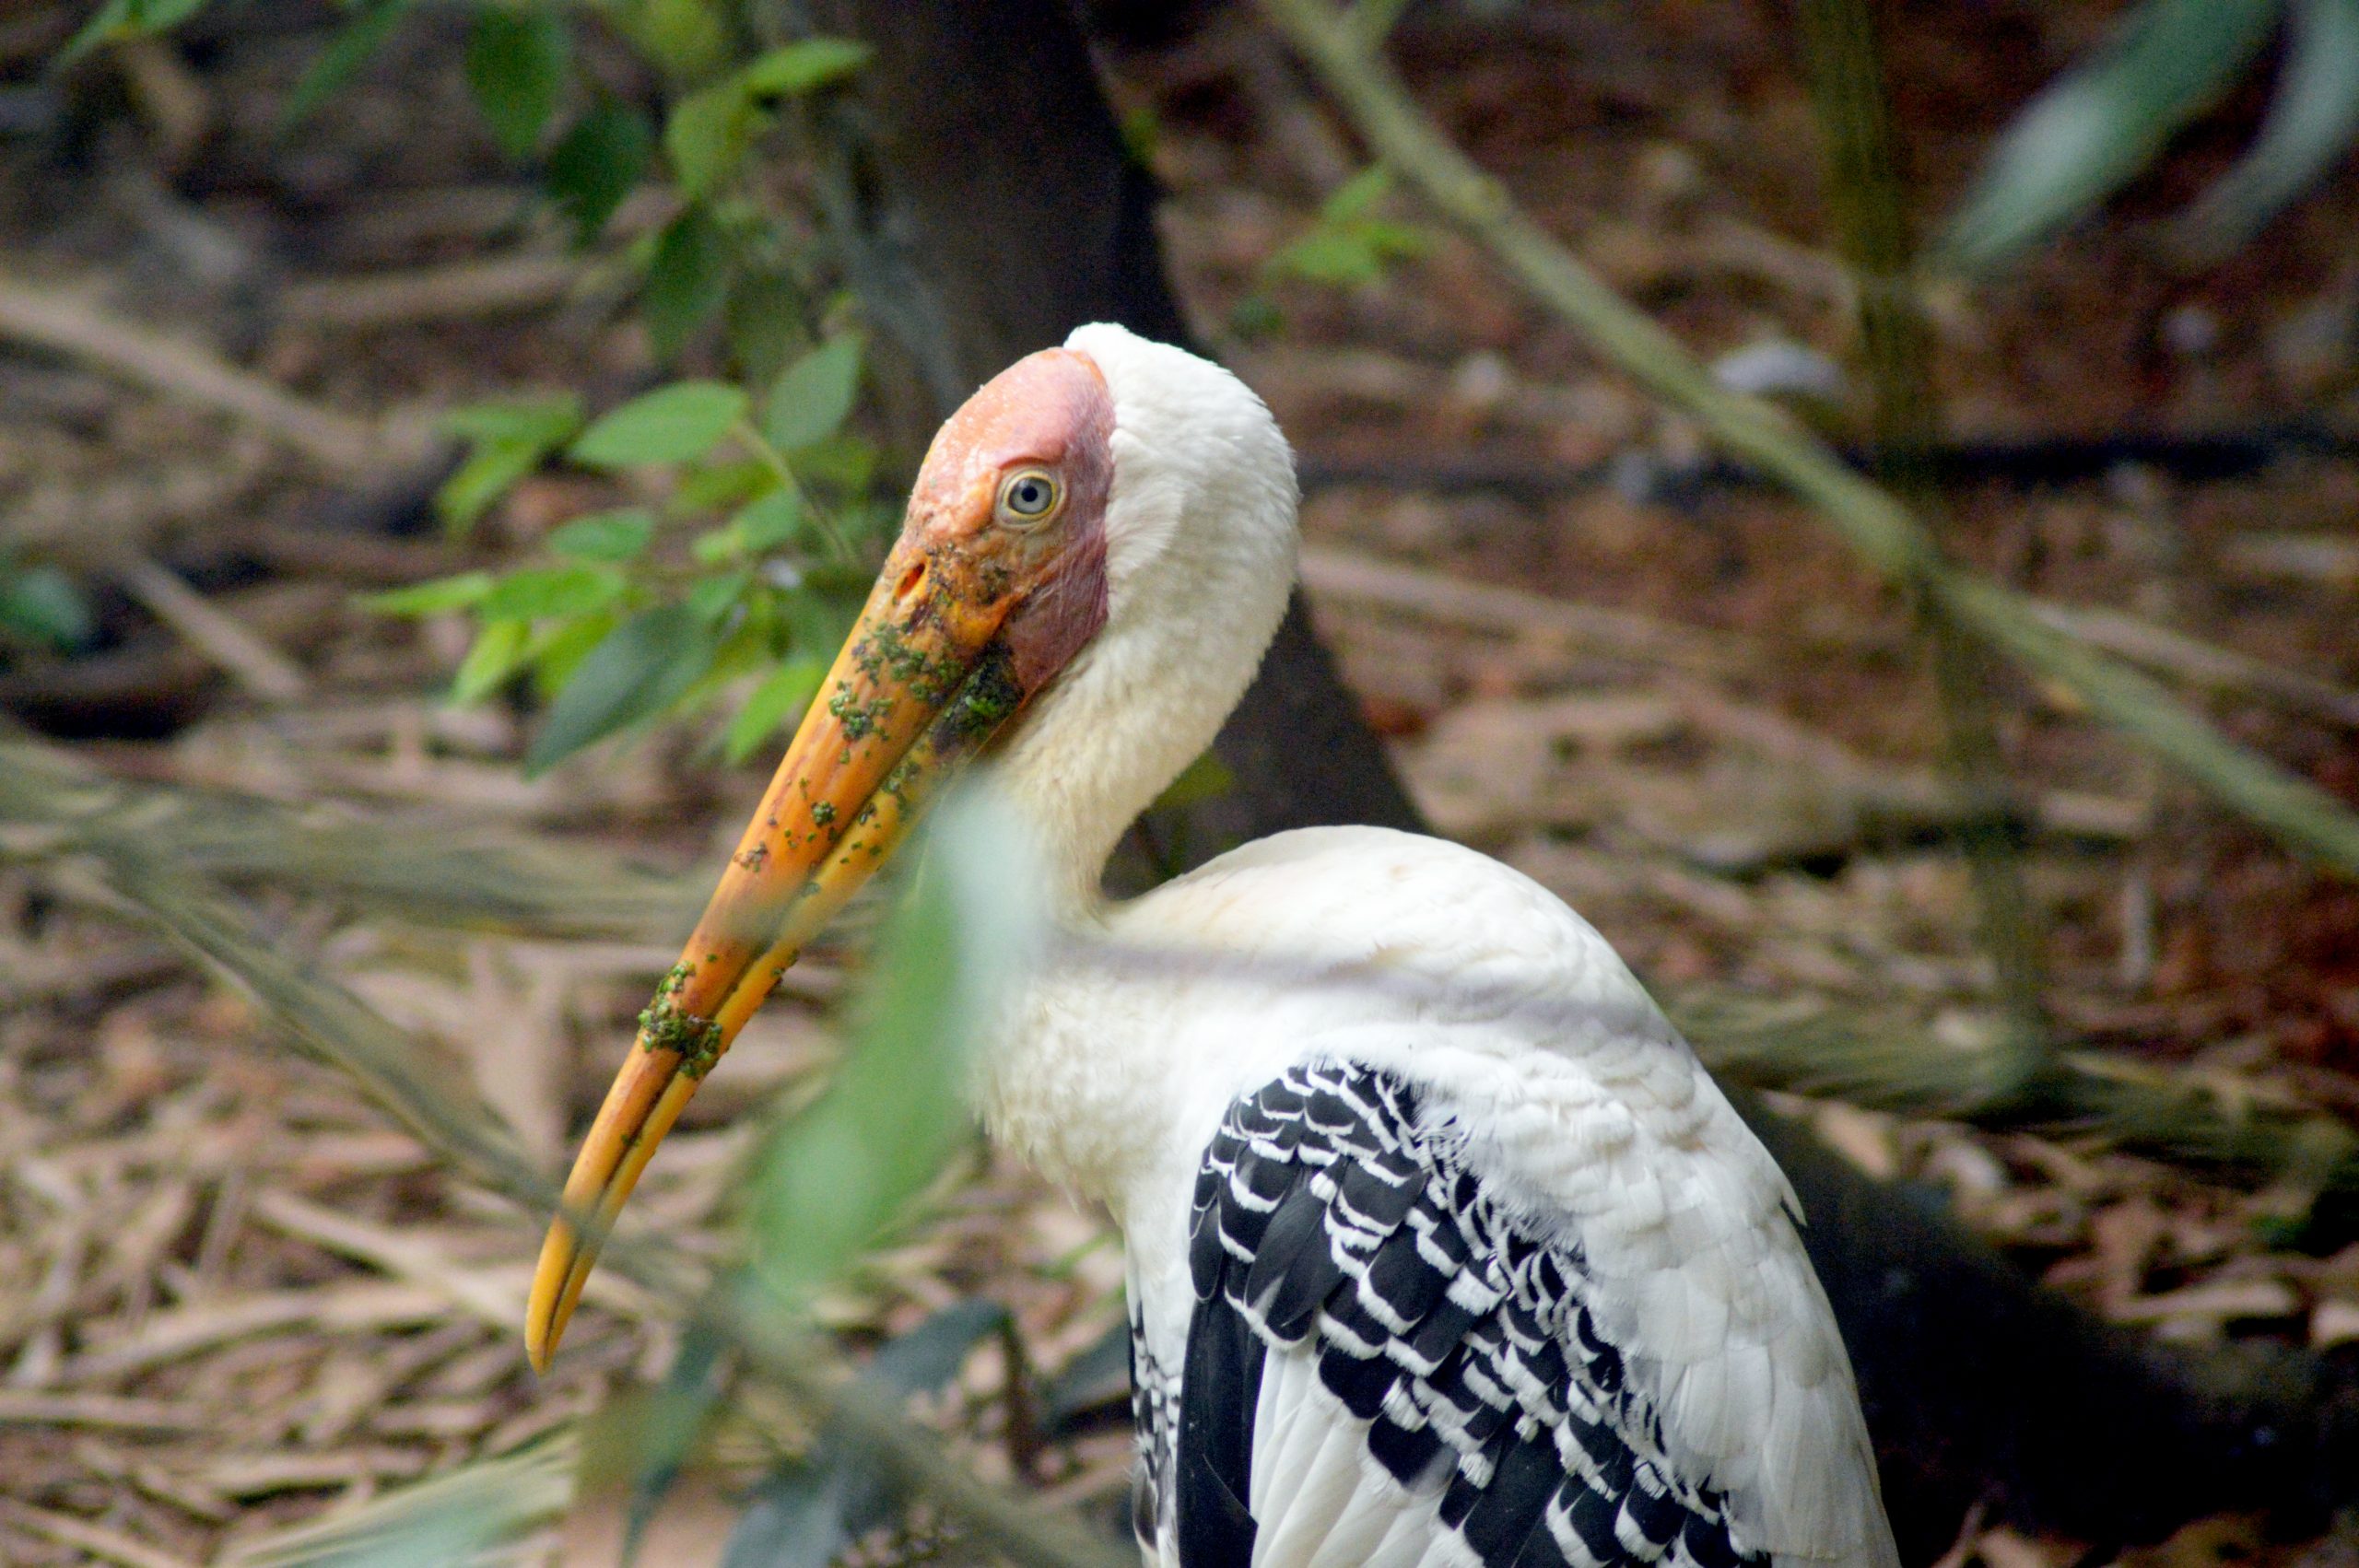 A pelican bird